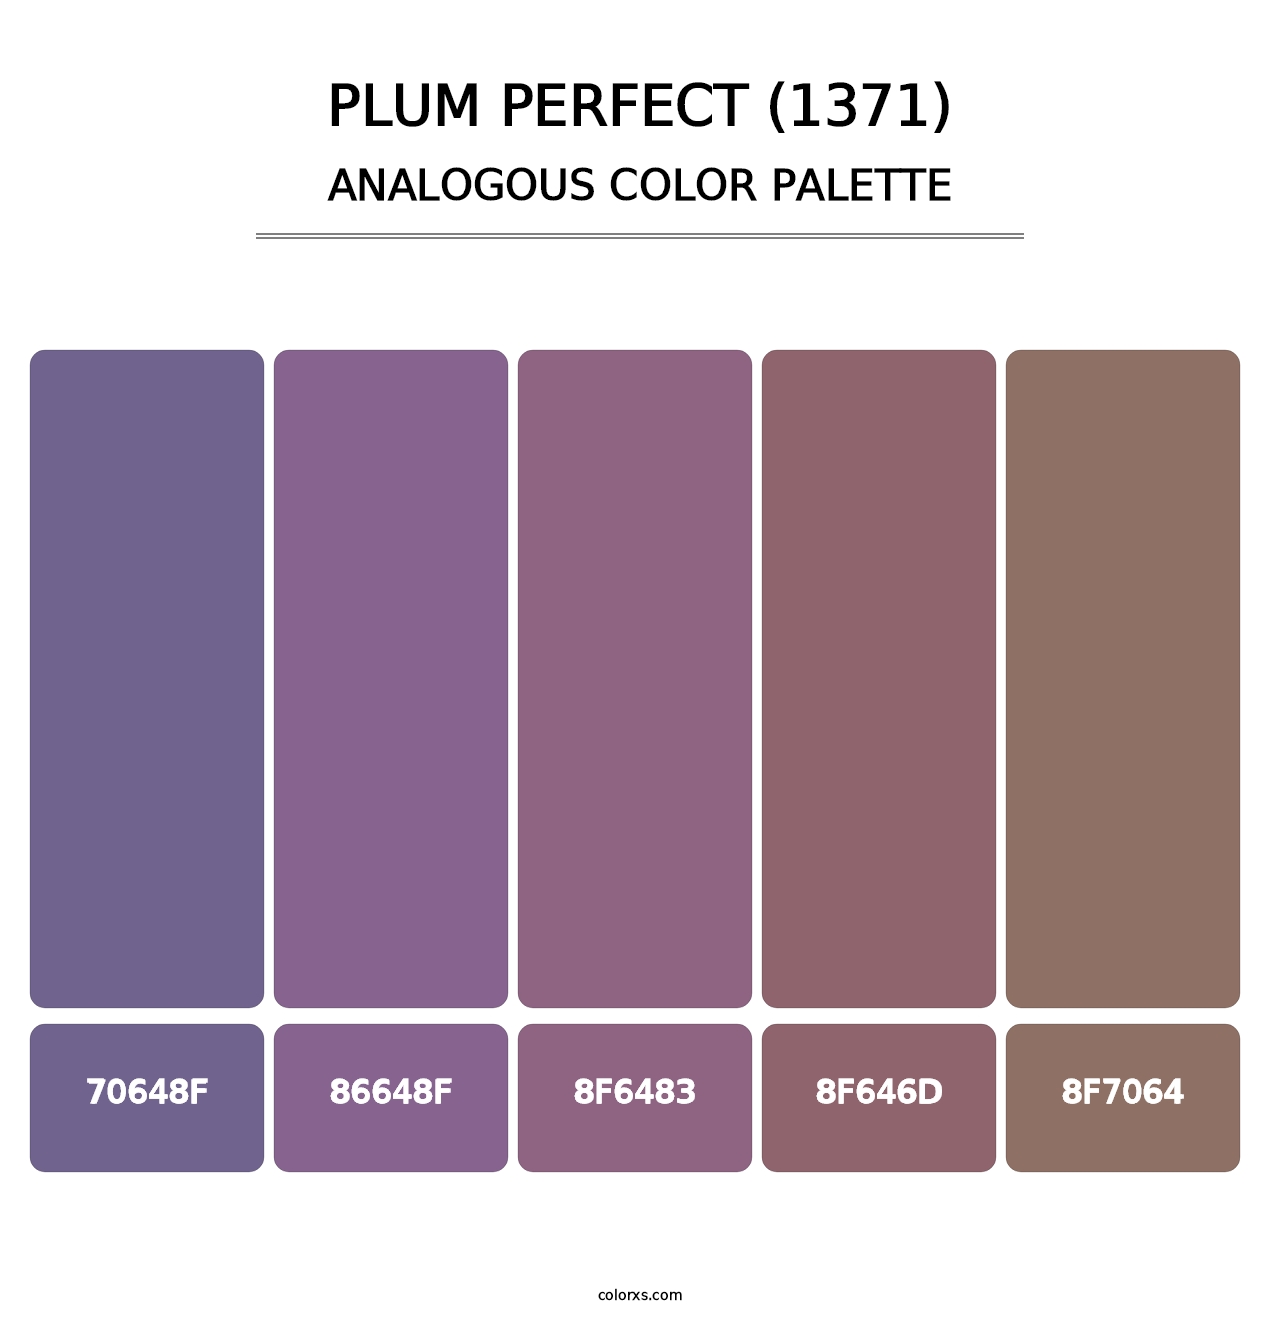 Plum Perfect (1371) - Analogous Color Palette